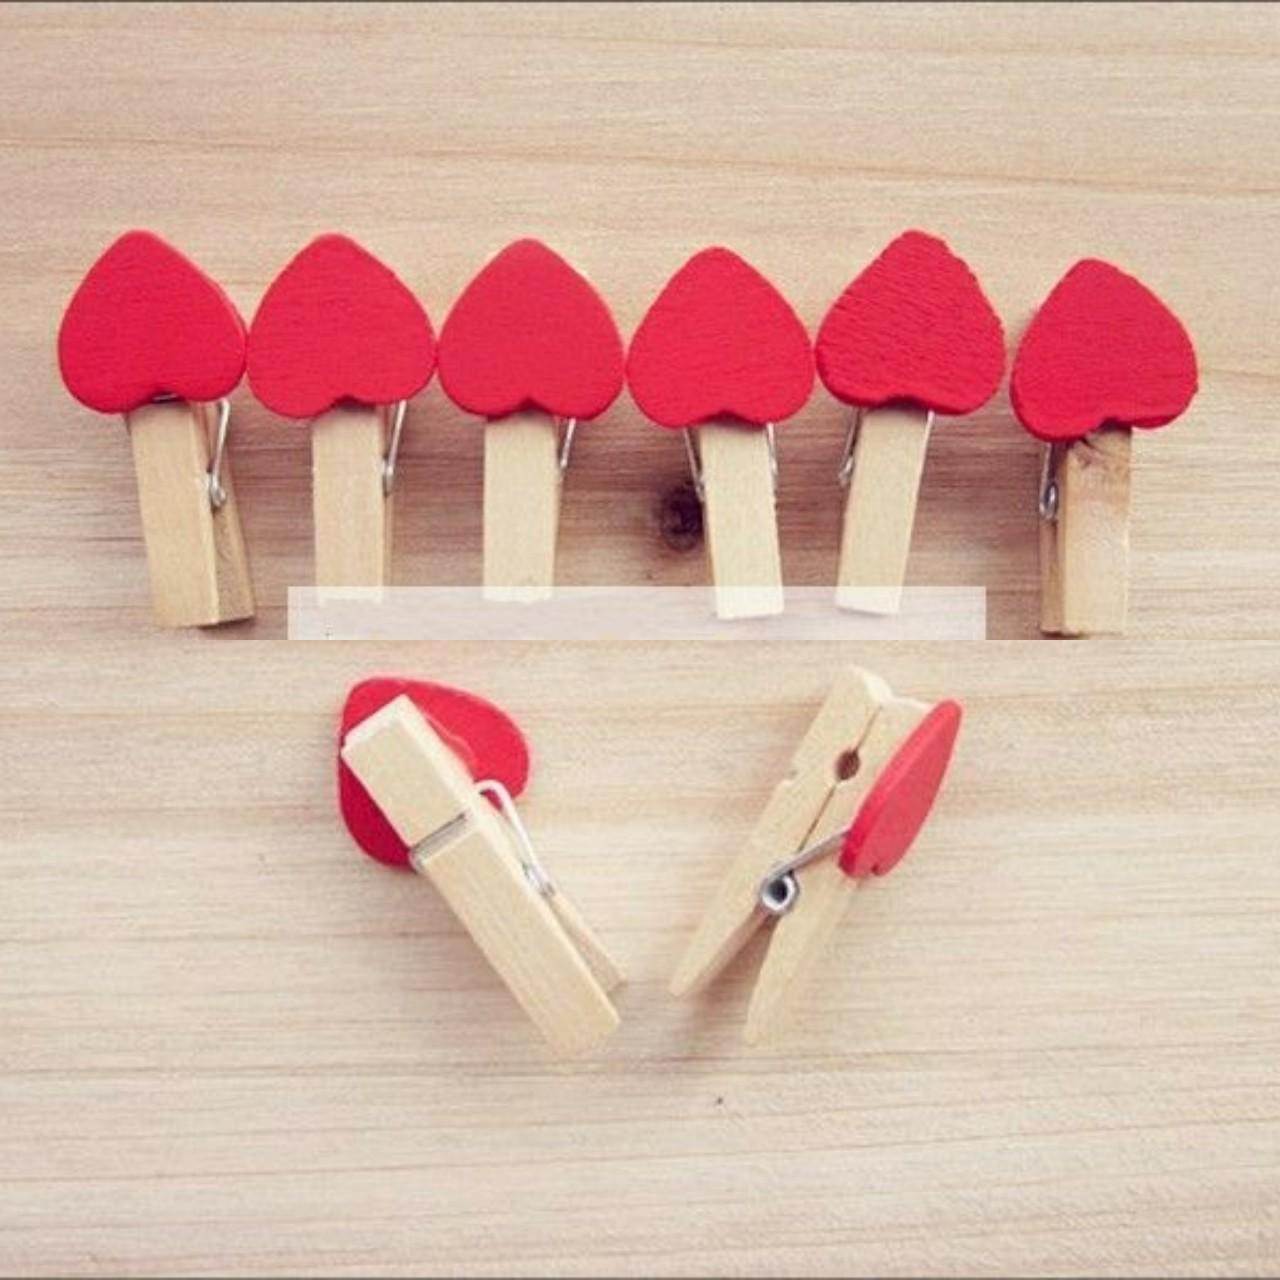 Combo 10 kẹp gỗ hình trái tim màu đỏ đơn giản, tiện dụng - Kẹp gỗ kẹp ảnh trang trí - Kẹp gỗ trang trí - Kẹp giấy